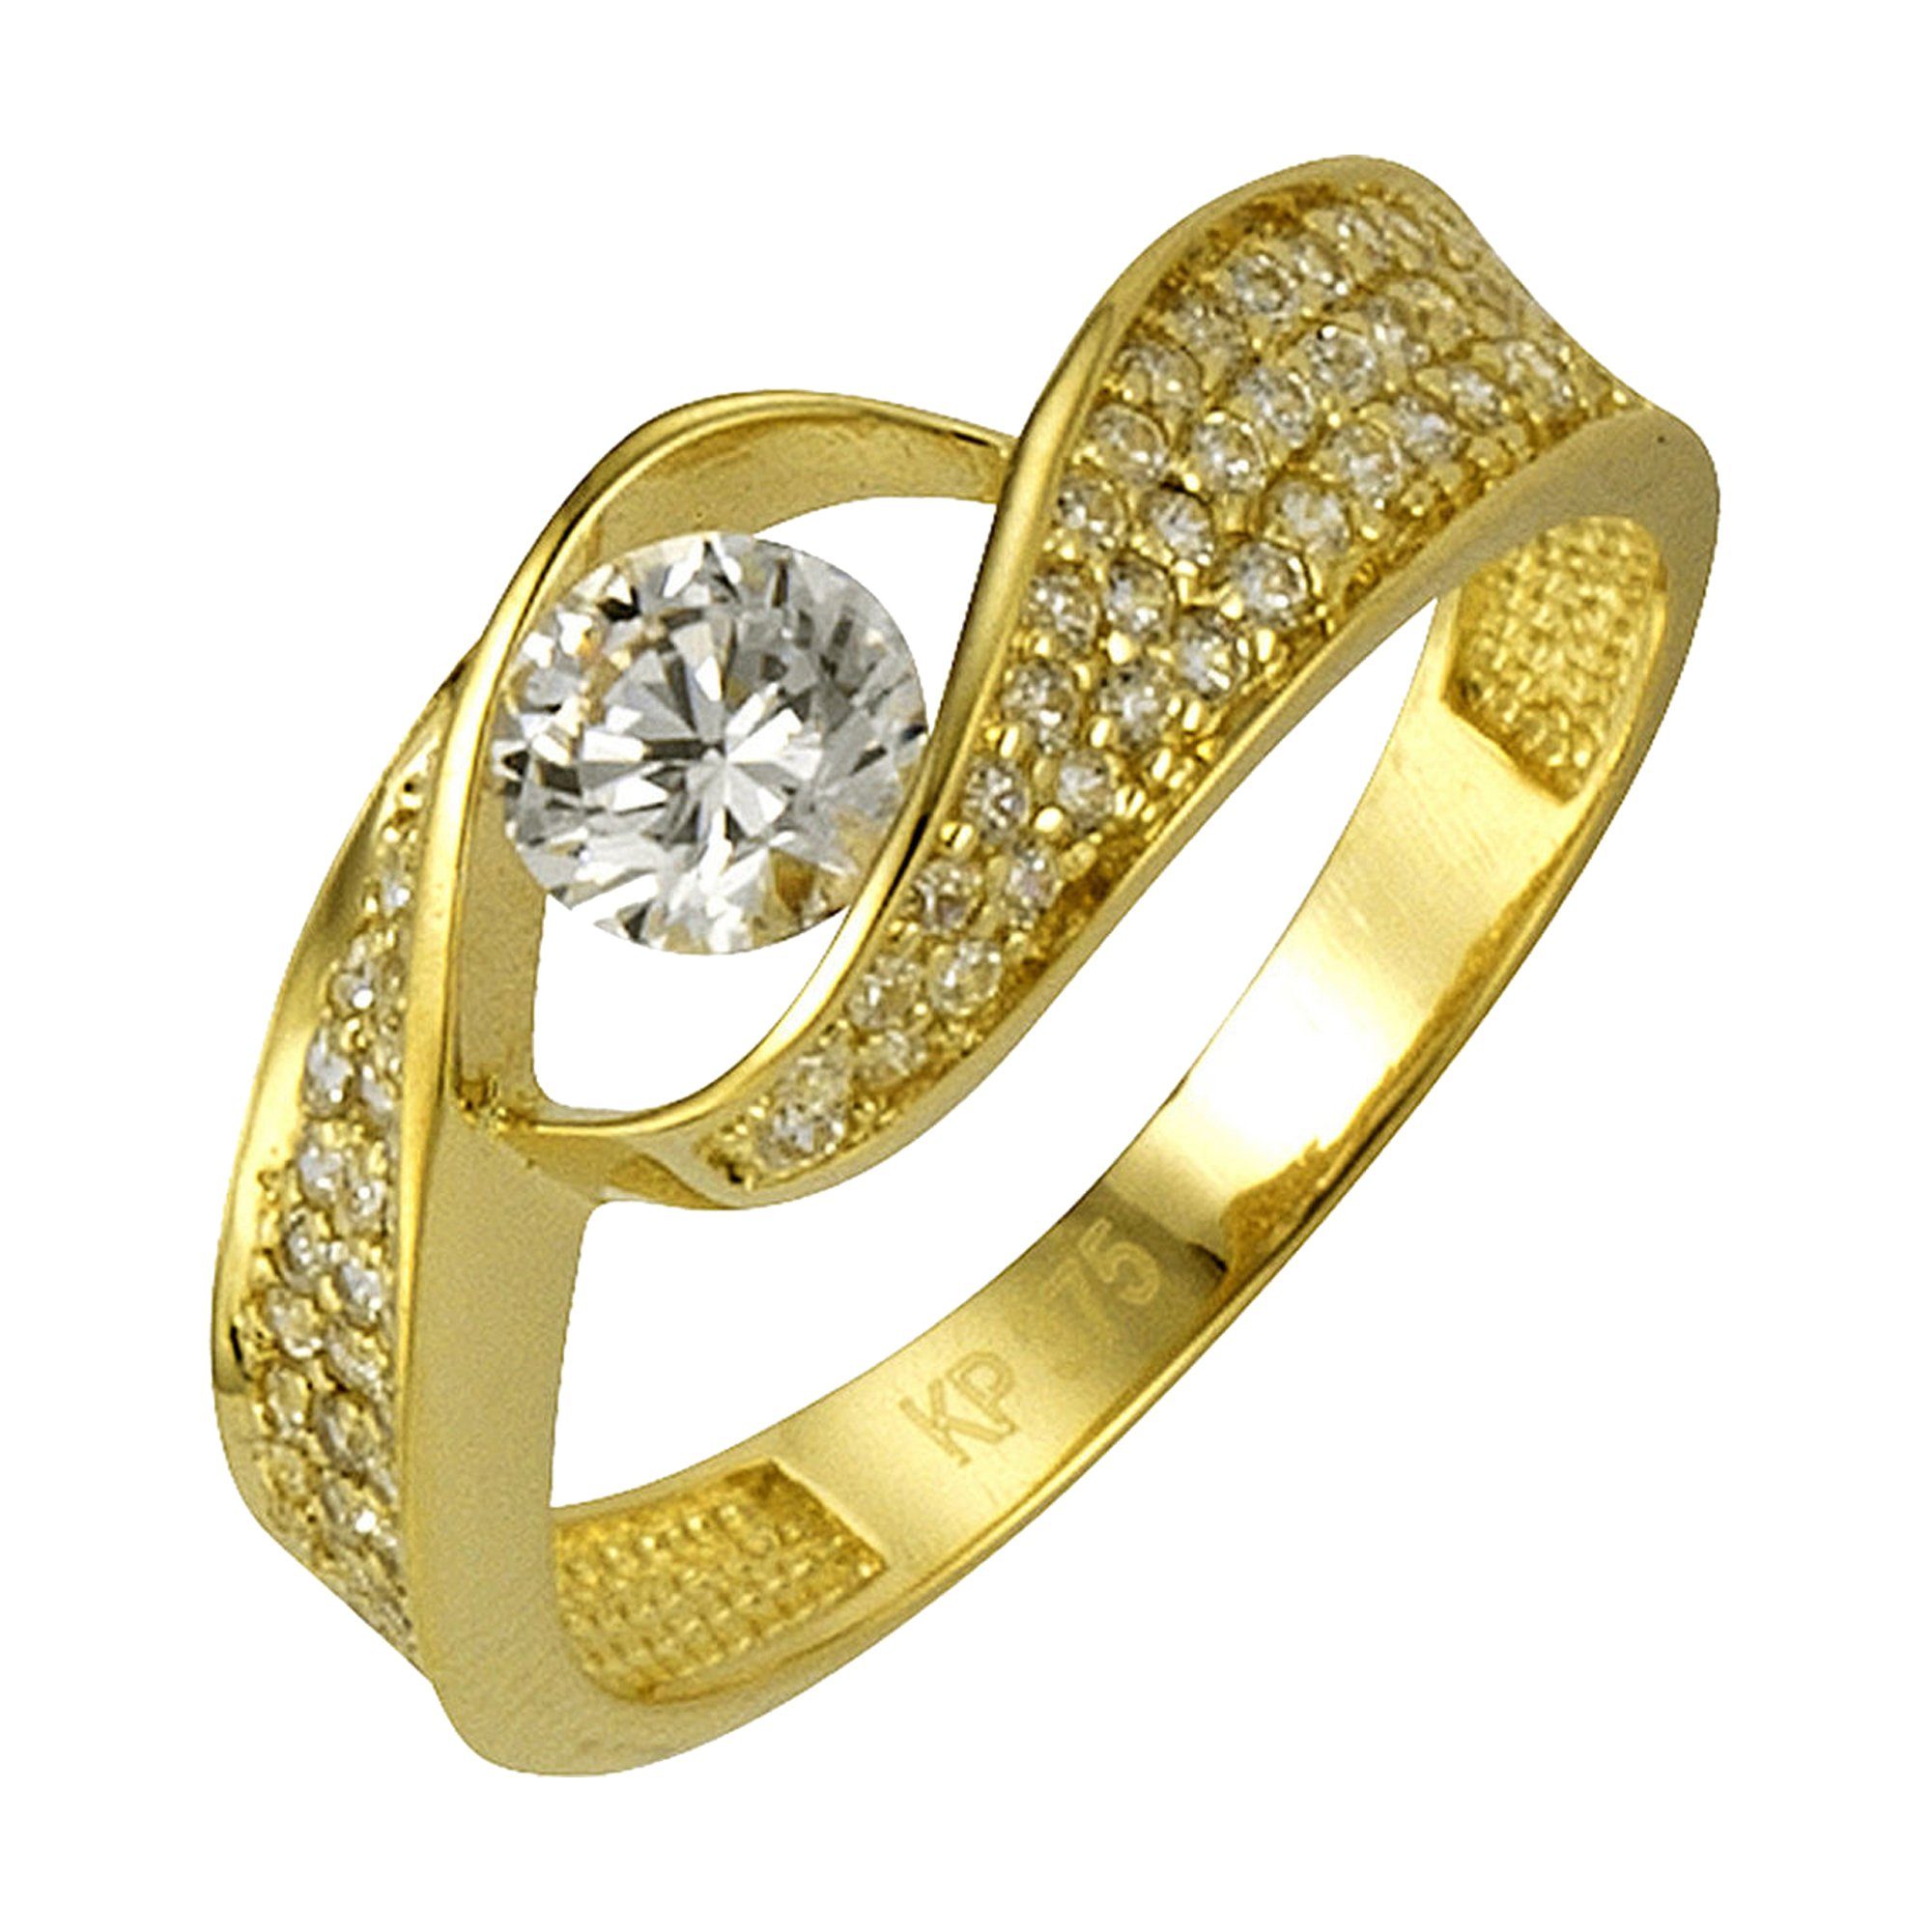 CELESTA Fingerring 375 Gold mit Zirkonia weiß